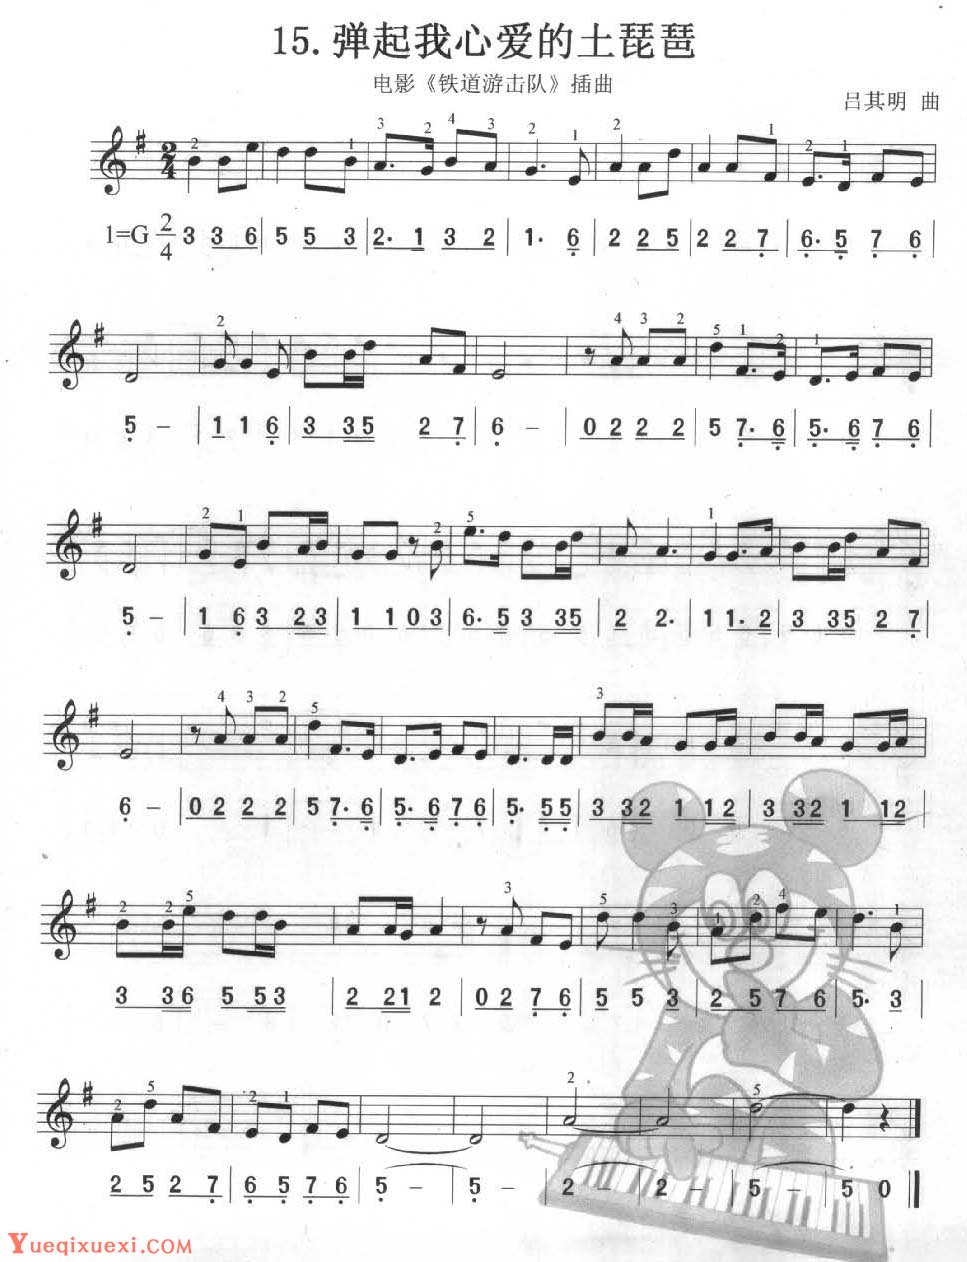 单声部口风琴乐曲【弹起我心爱的土琵琶】一个升号调的练习